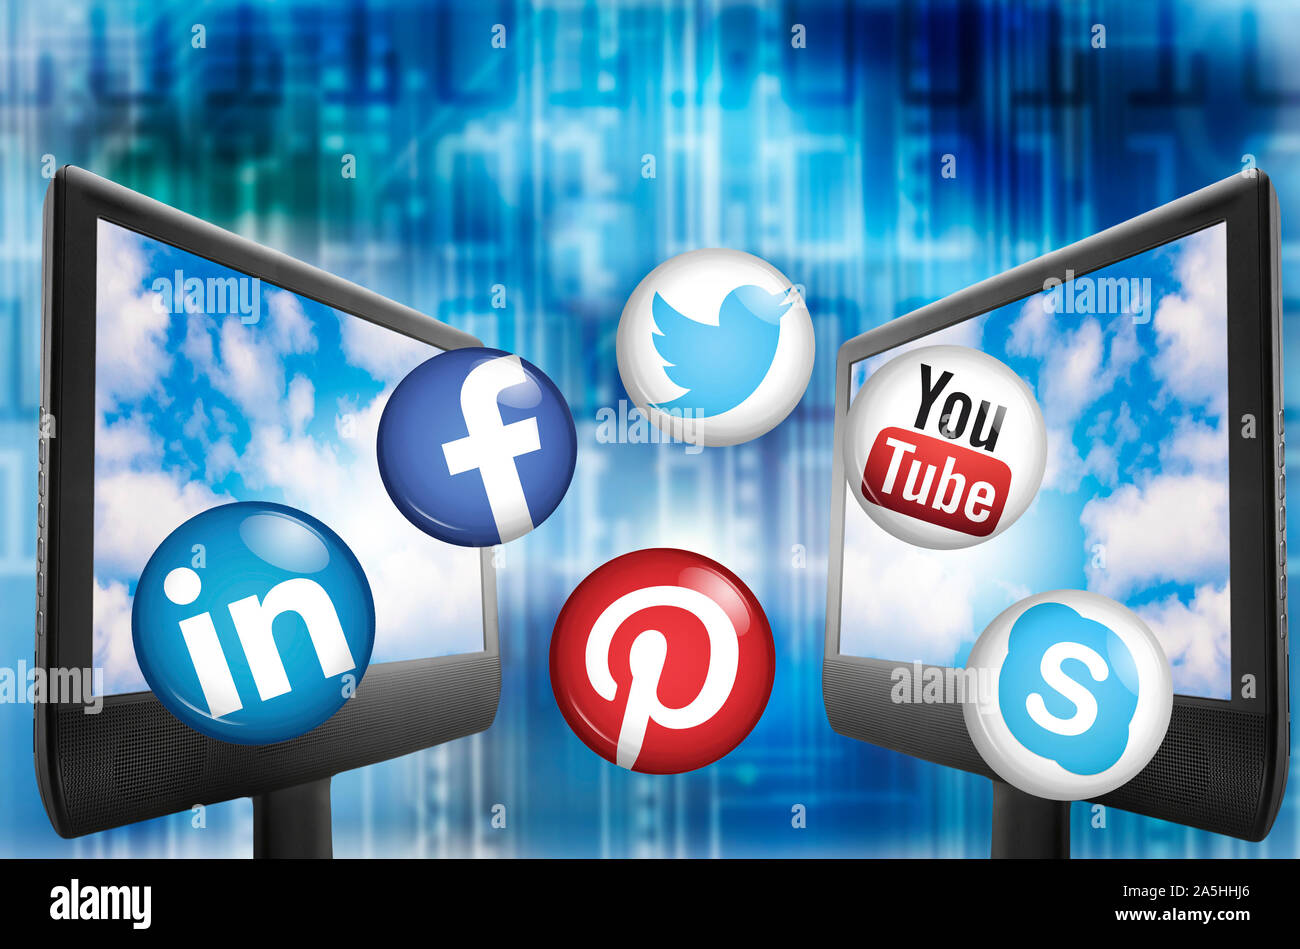 computer monitors and social media logos Stock Photo